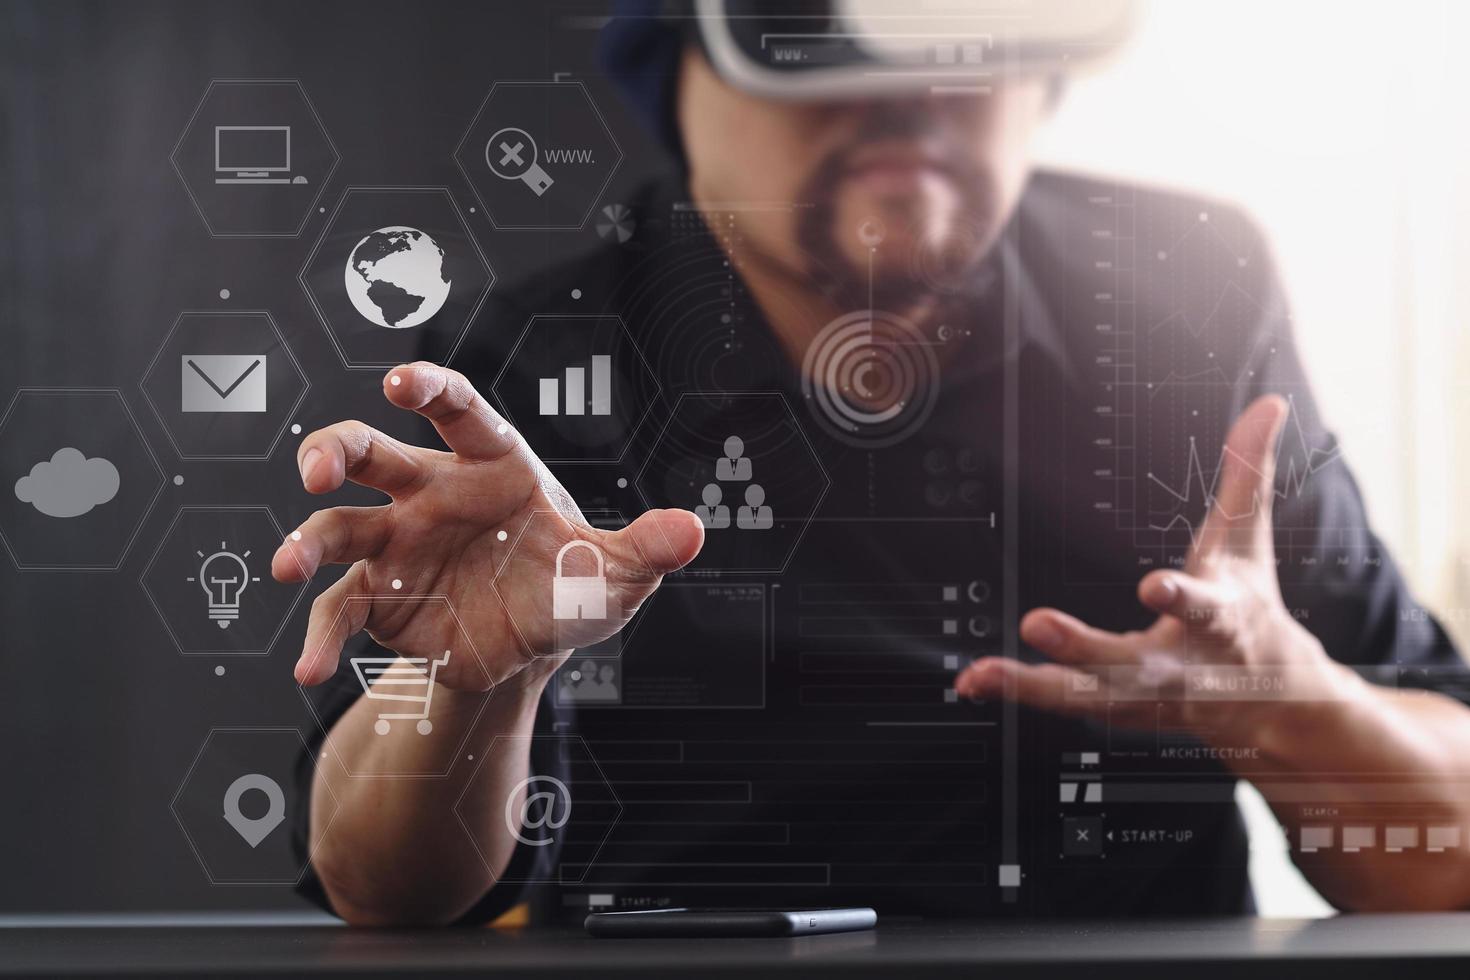 hombre de negocios usando gafas de realidad virtual en una oficina moderna con teléfono móvil usando auriculares vr con diagrama de icono de pantalla foto